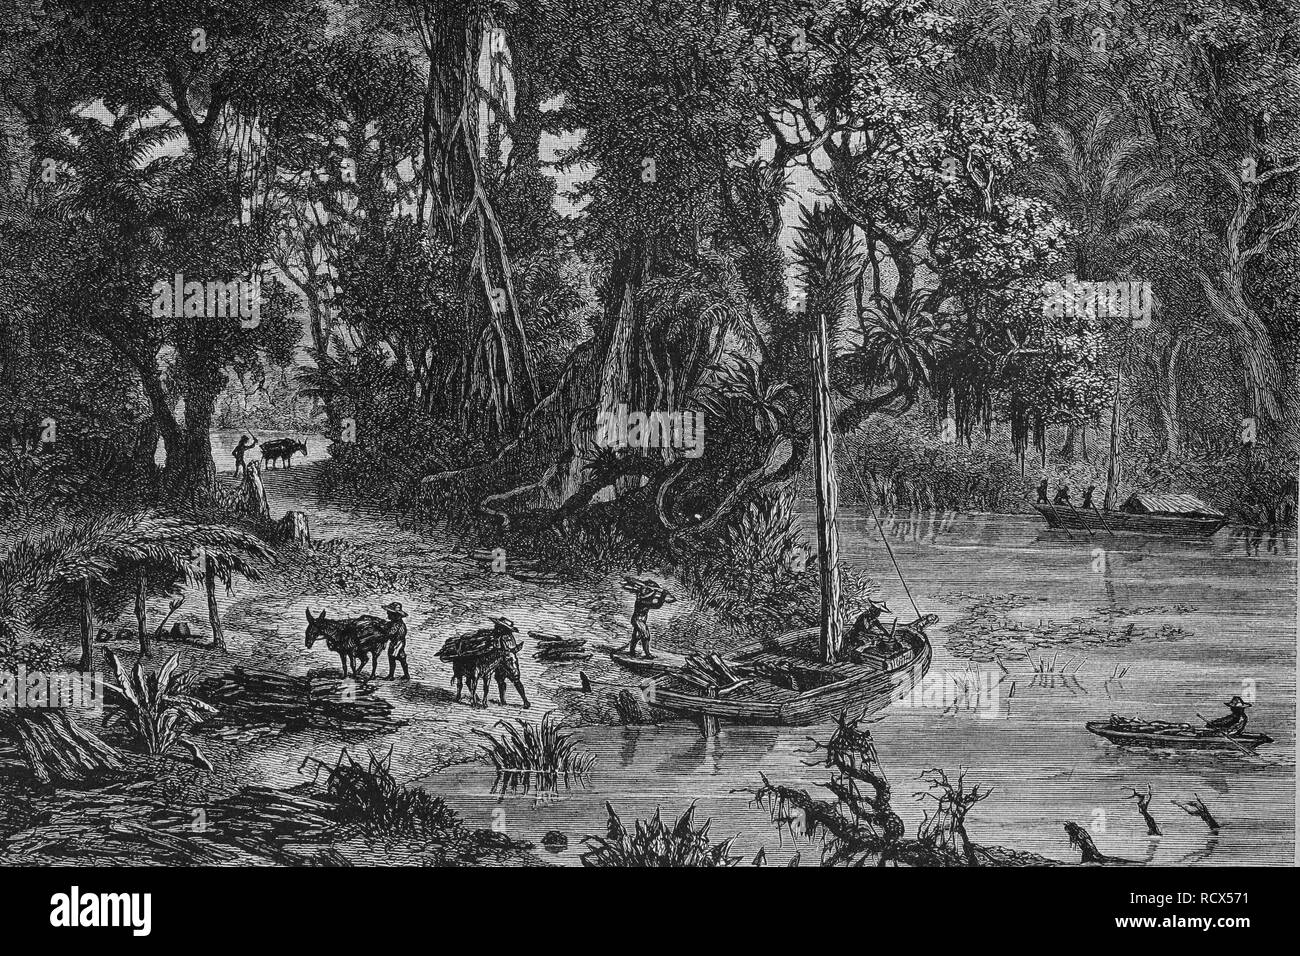 Chargement de l'hématine en Amérique centrale, gravure sur bois, gravure historique, 1882 Banque D'Images